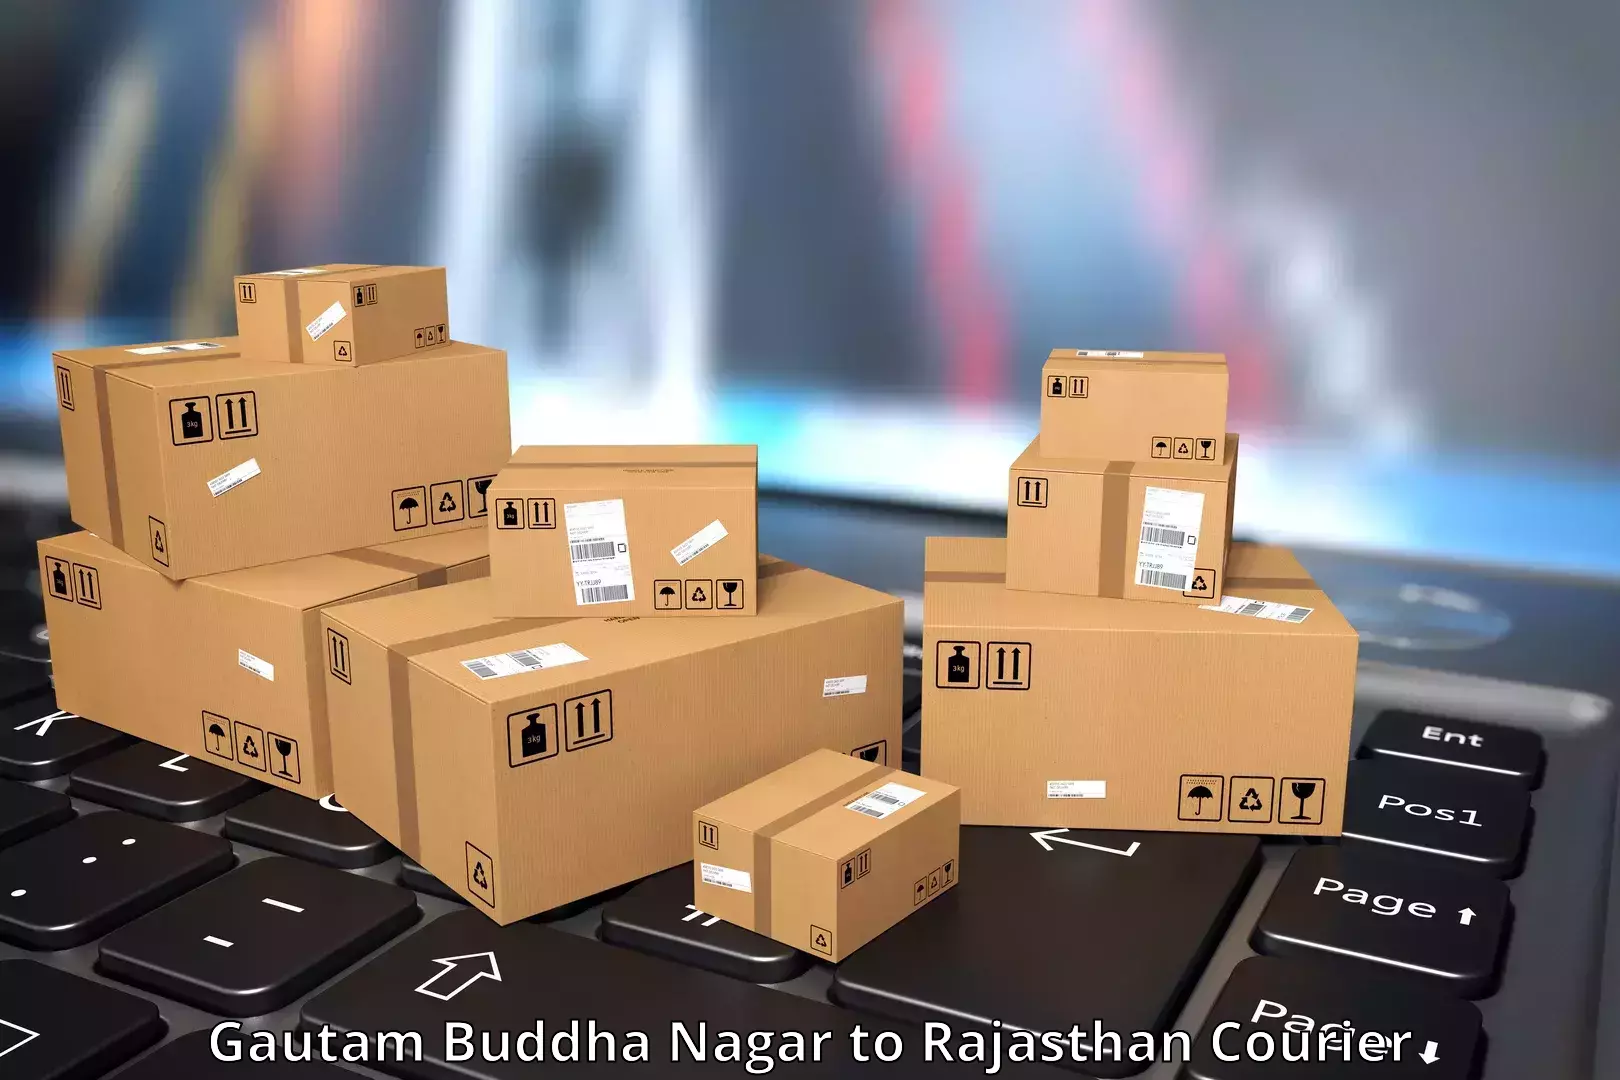 Full-service courier options Gautam Buddha Nagar to Shahpura Jaipur